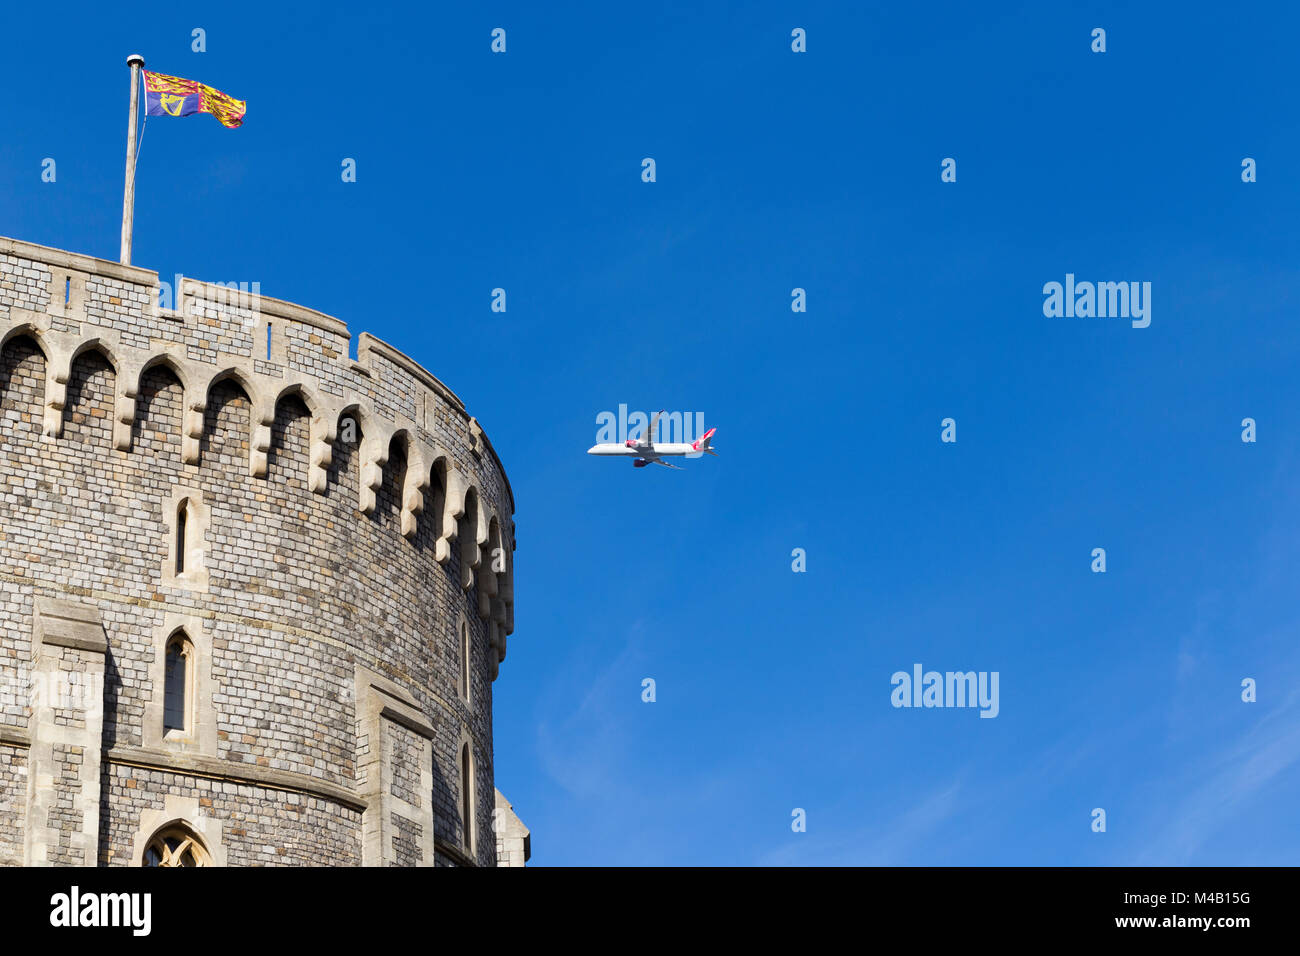 Aerei / aeroplano / aereo / volo dall aeroporto di Heathrow sulla torre rotonda del Castello di Windsor, arrampicata dopo il decollo, & Royal bandiera Standard Foto Stock